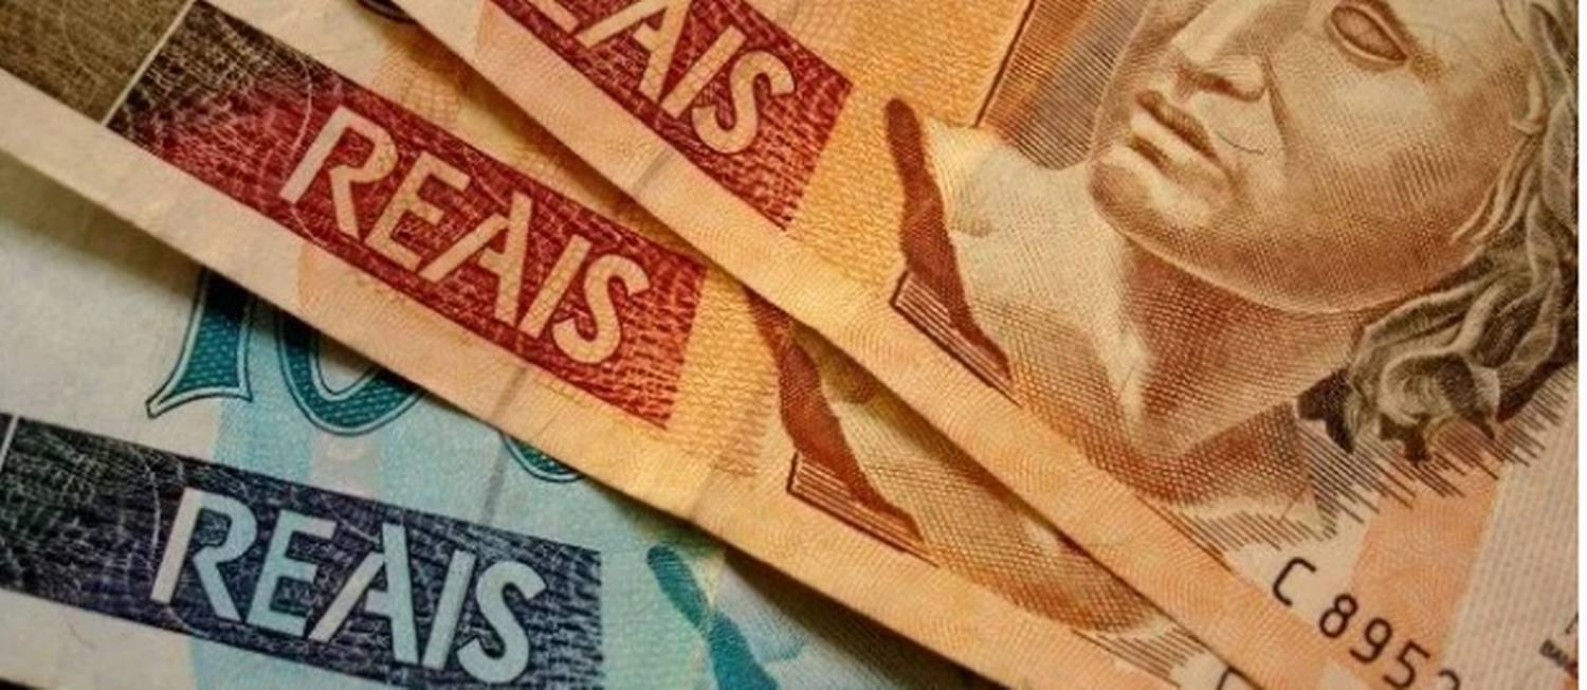 Brasileiros têm R$ 8 bi esquecidos em contas, segundo levantamento do BC Foto: Arquivo